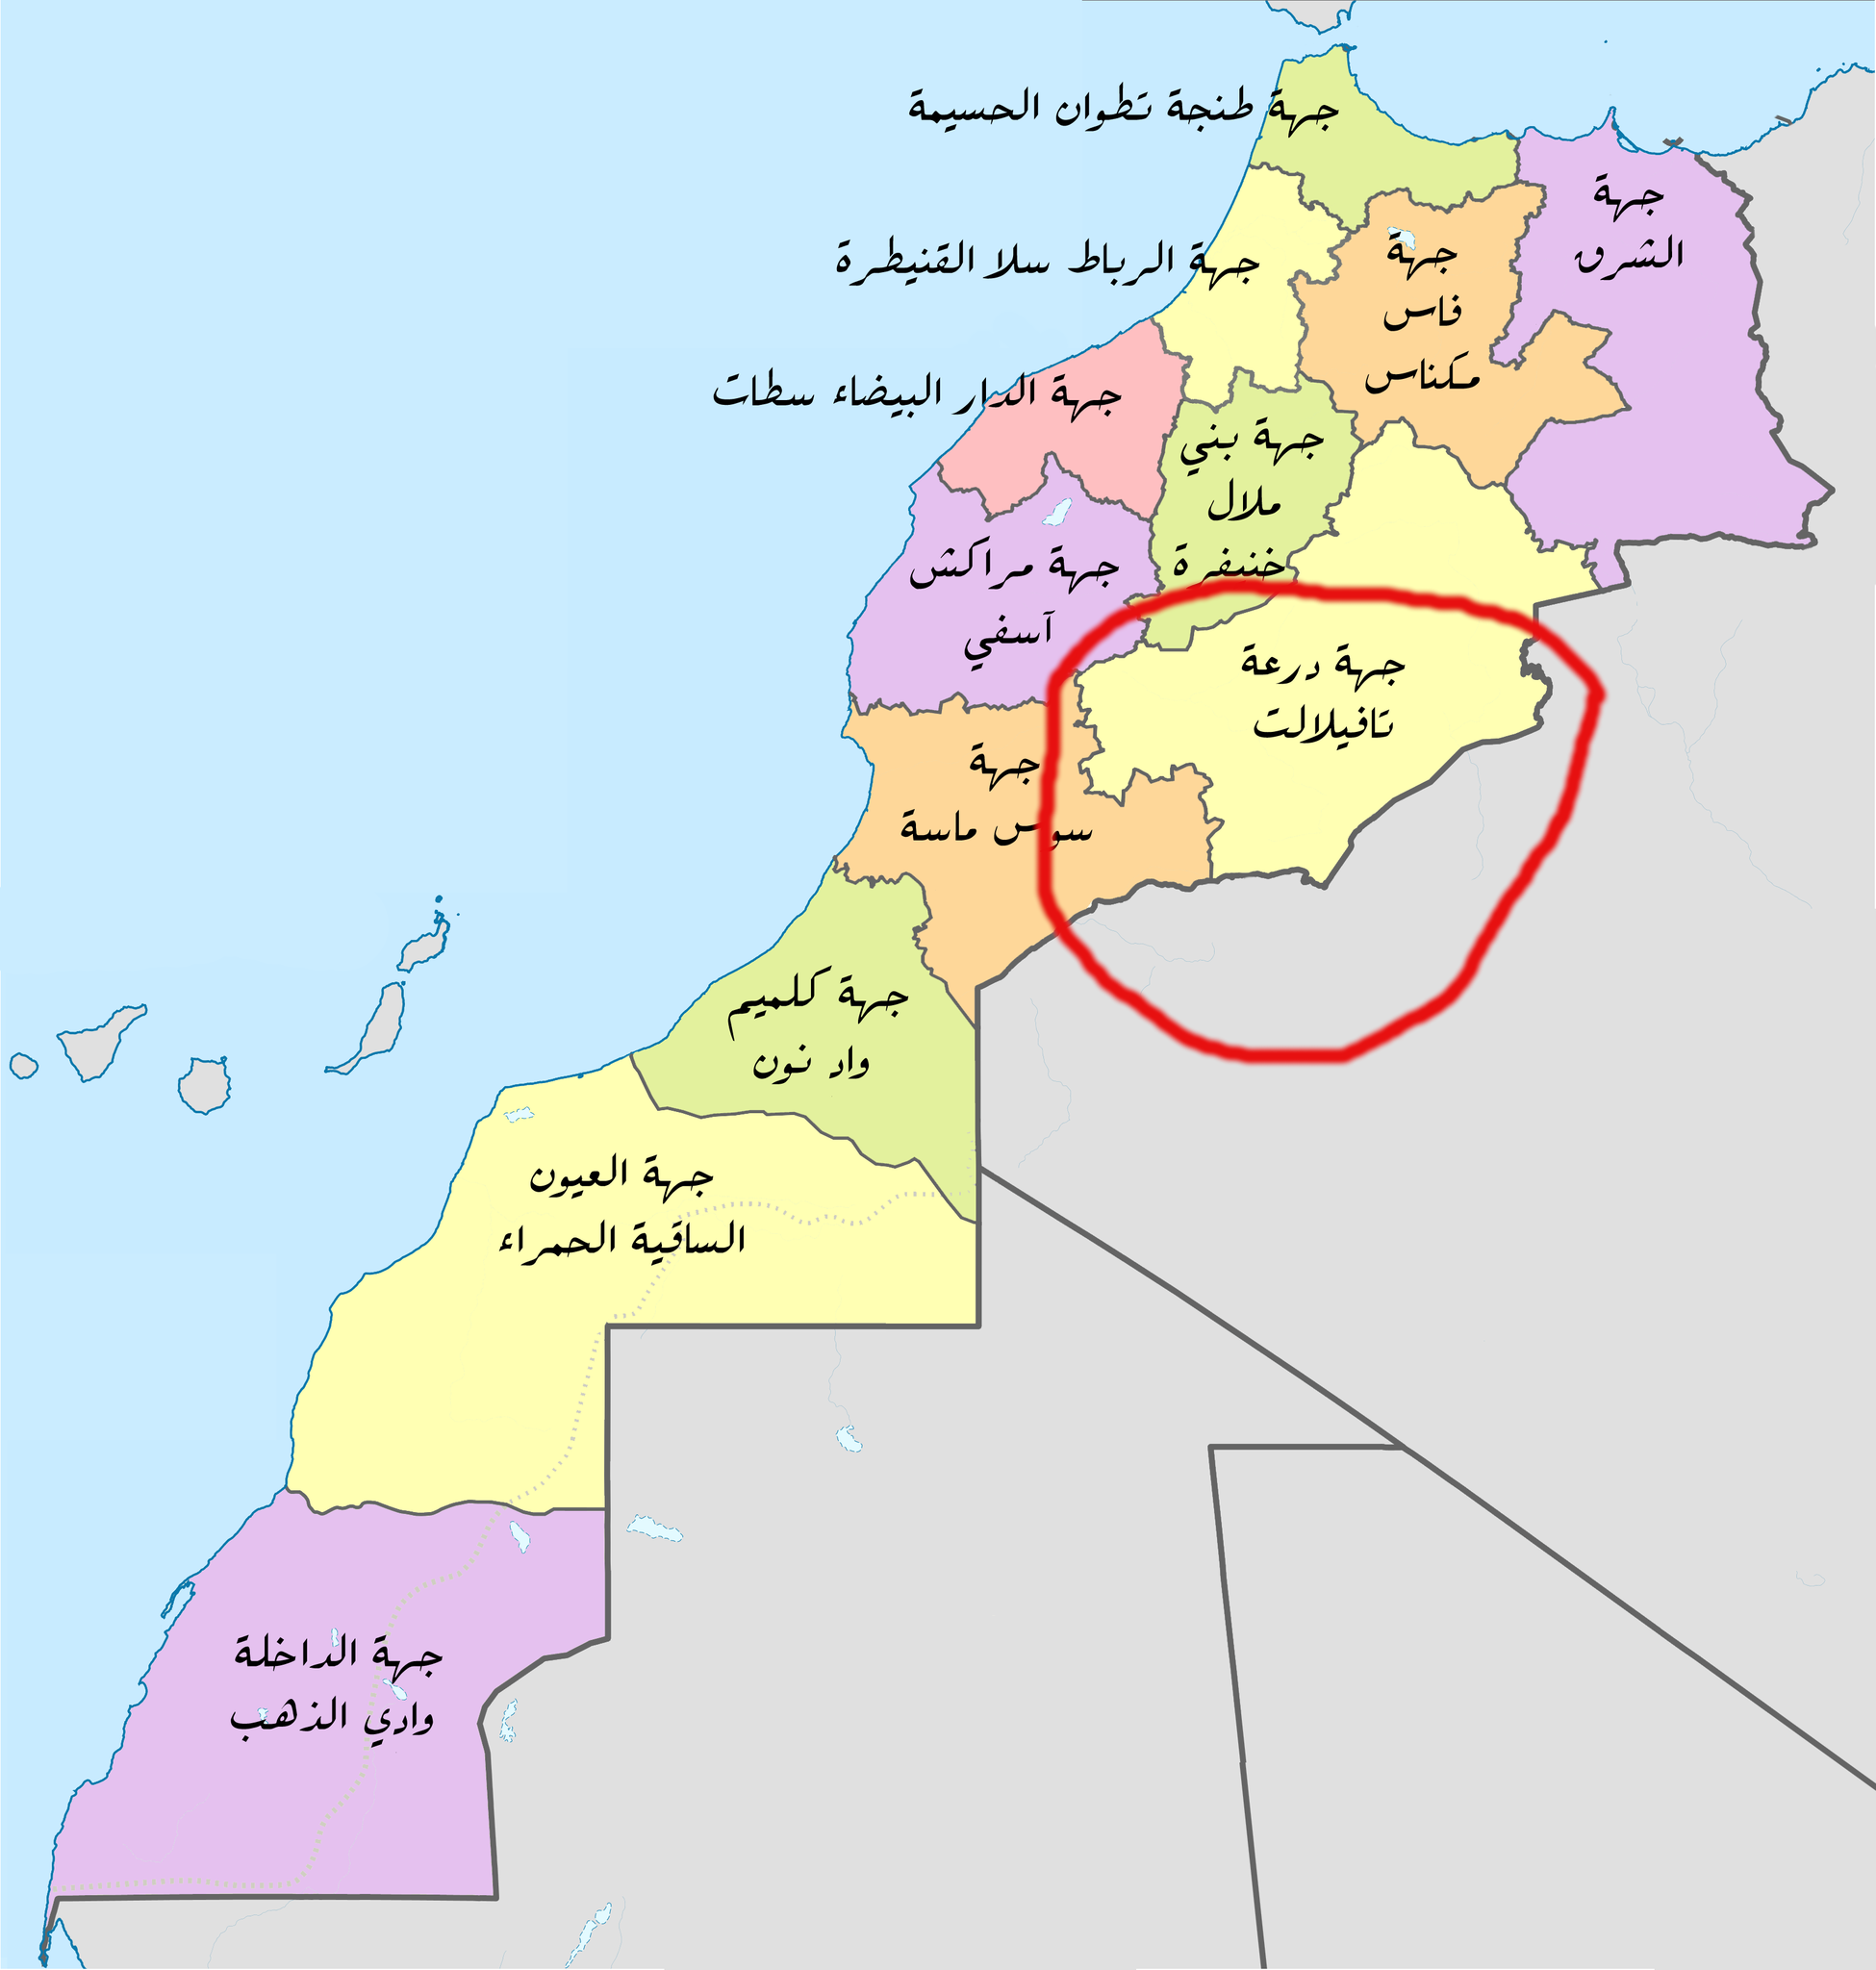 الإتحاديات القبلية الأوفر في الجنوب الشرقي المغربي: الروحة، ايت عطا، ولاد يحيى